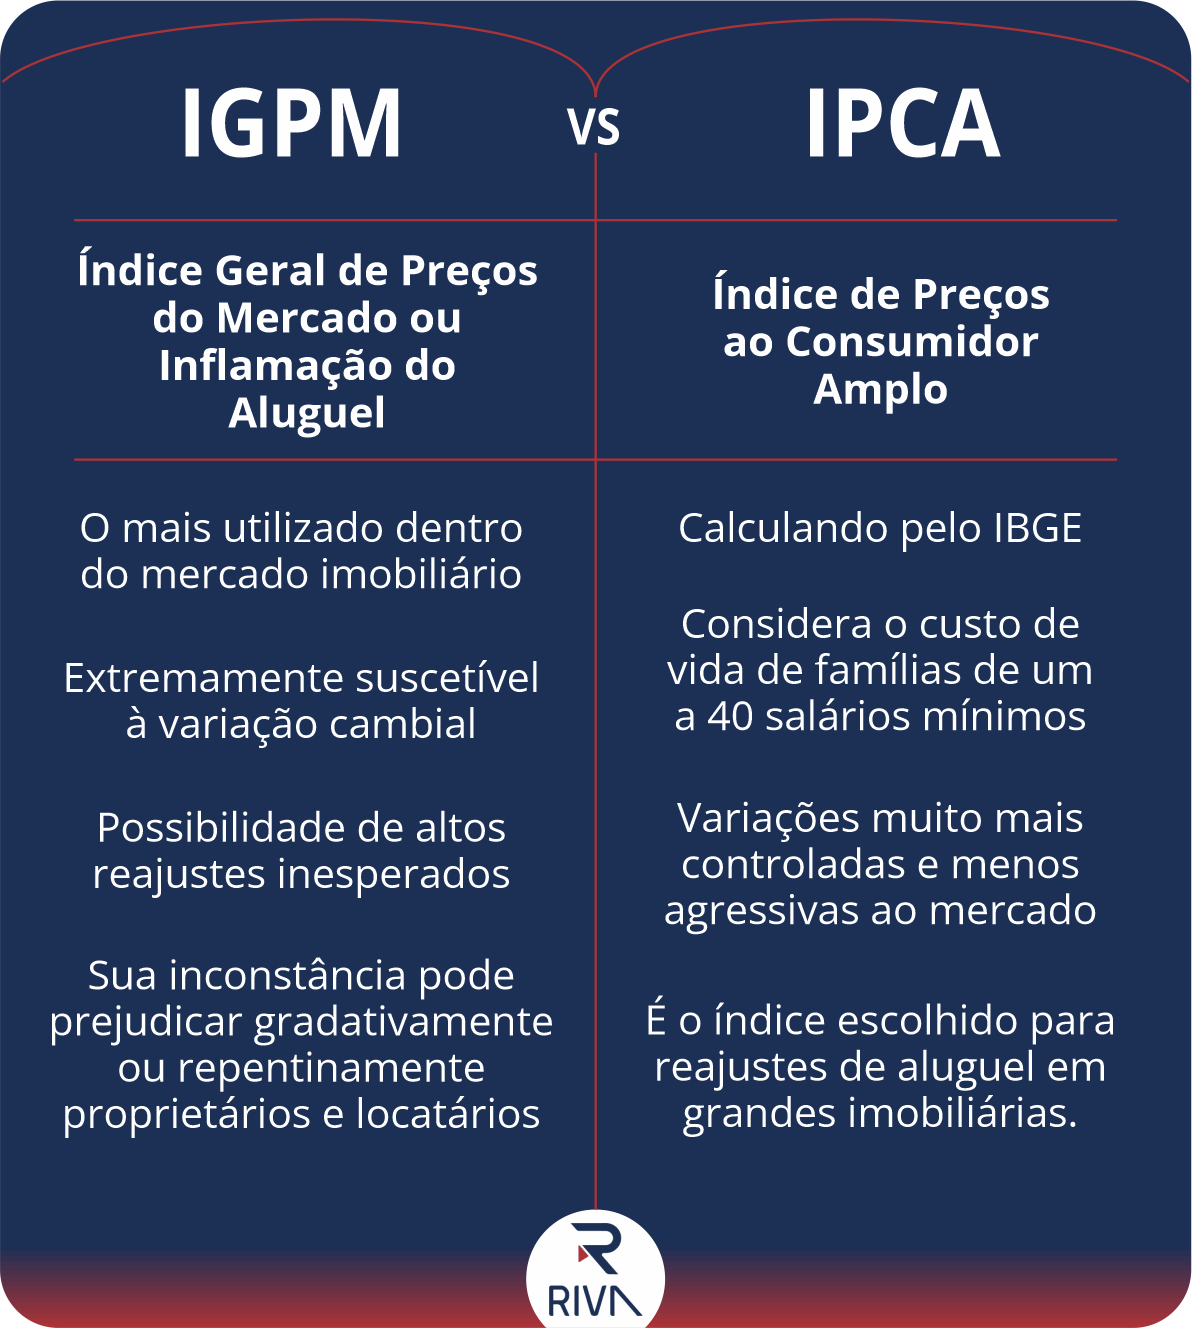 tabela com a comparação de principais informações entre IGPM e IPCA.